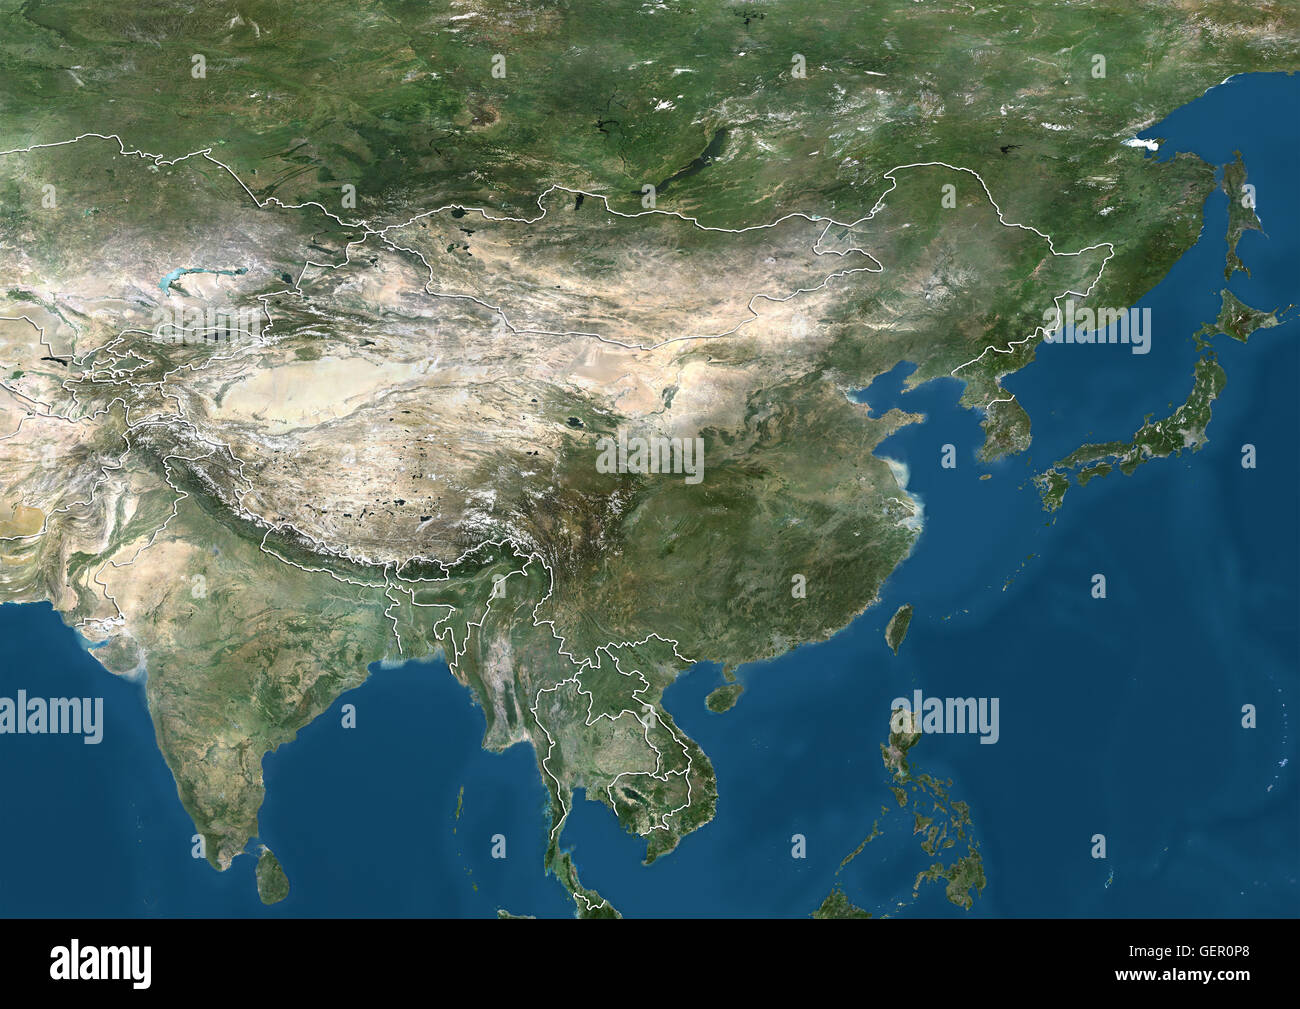 Satellitenansicht von Ostasien und indischen Subkontinent (mit Ländergrenzen). Dieses Bild wurde aus Daten von Landsat-Satelliten erworben erstellt. Stockfoto